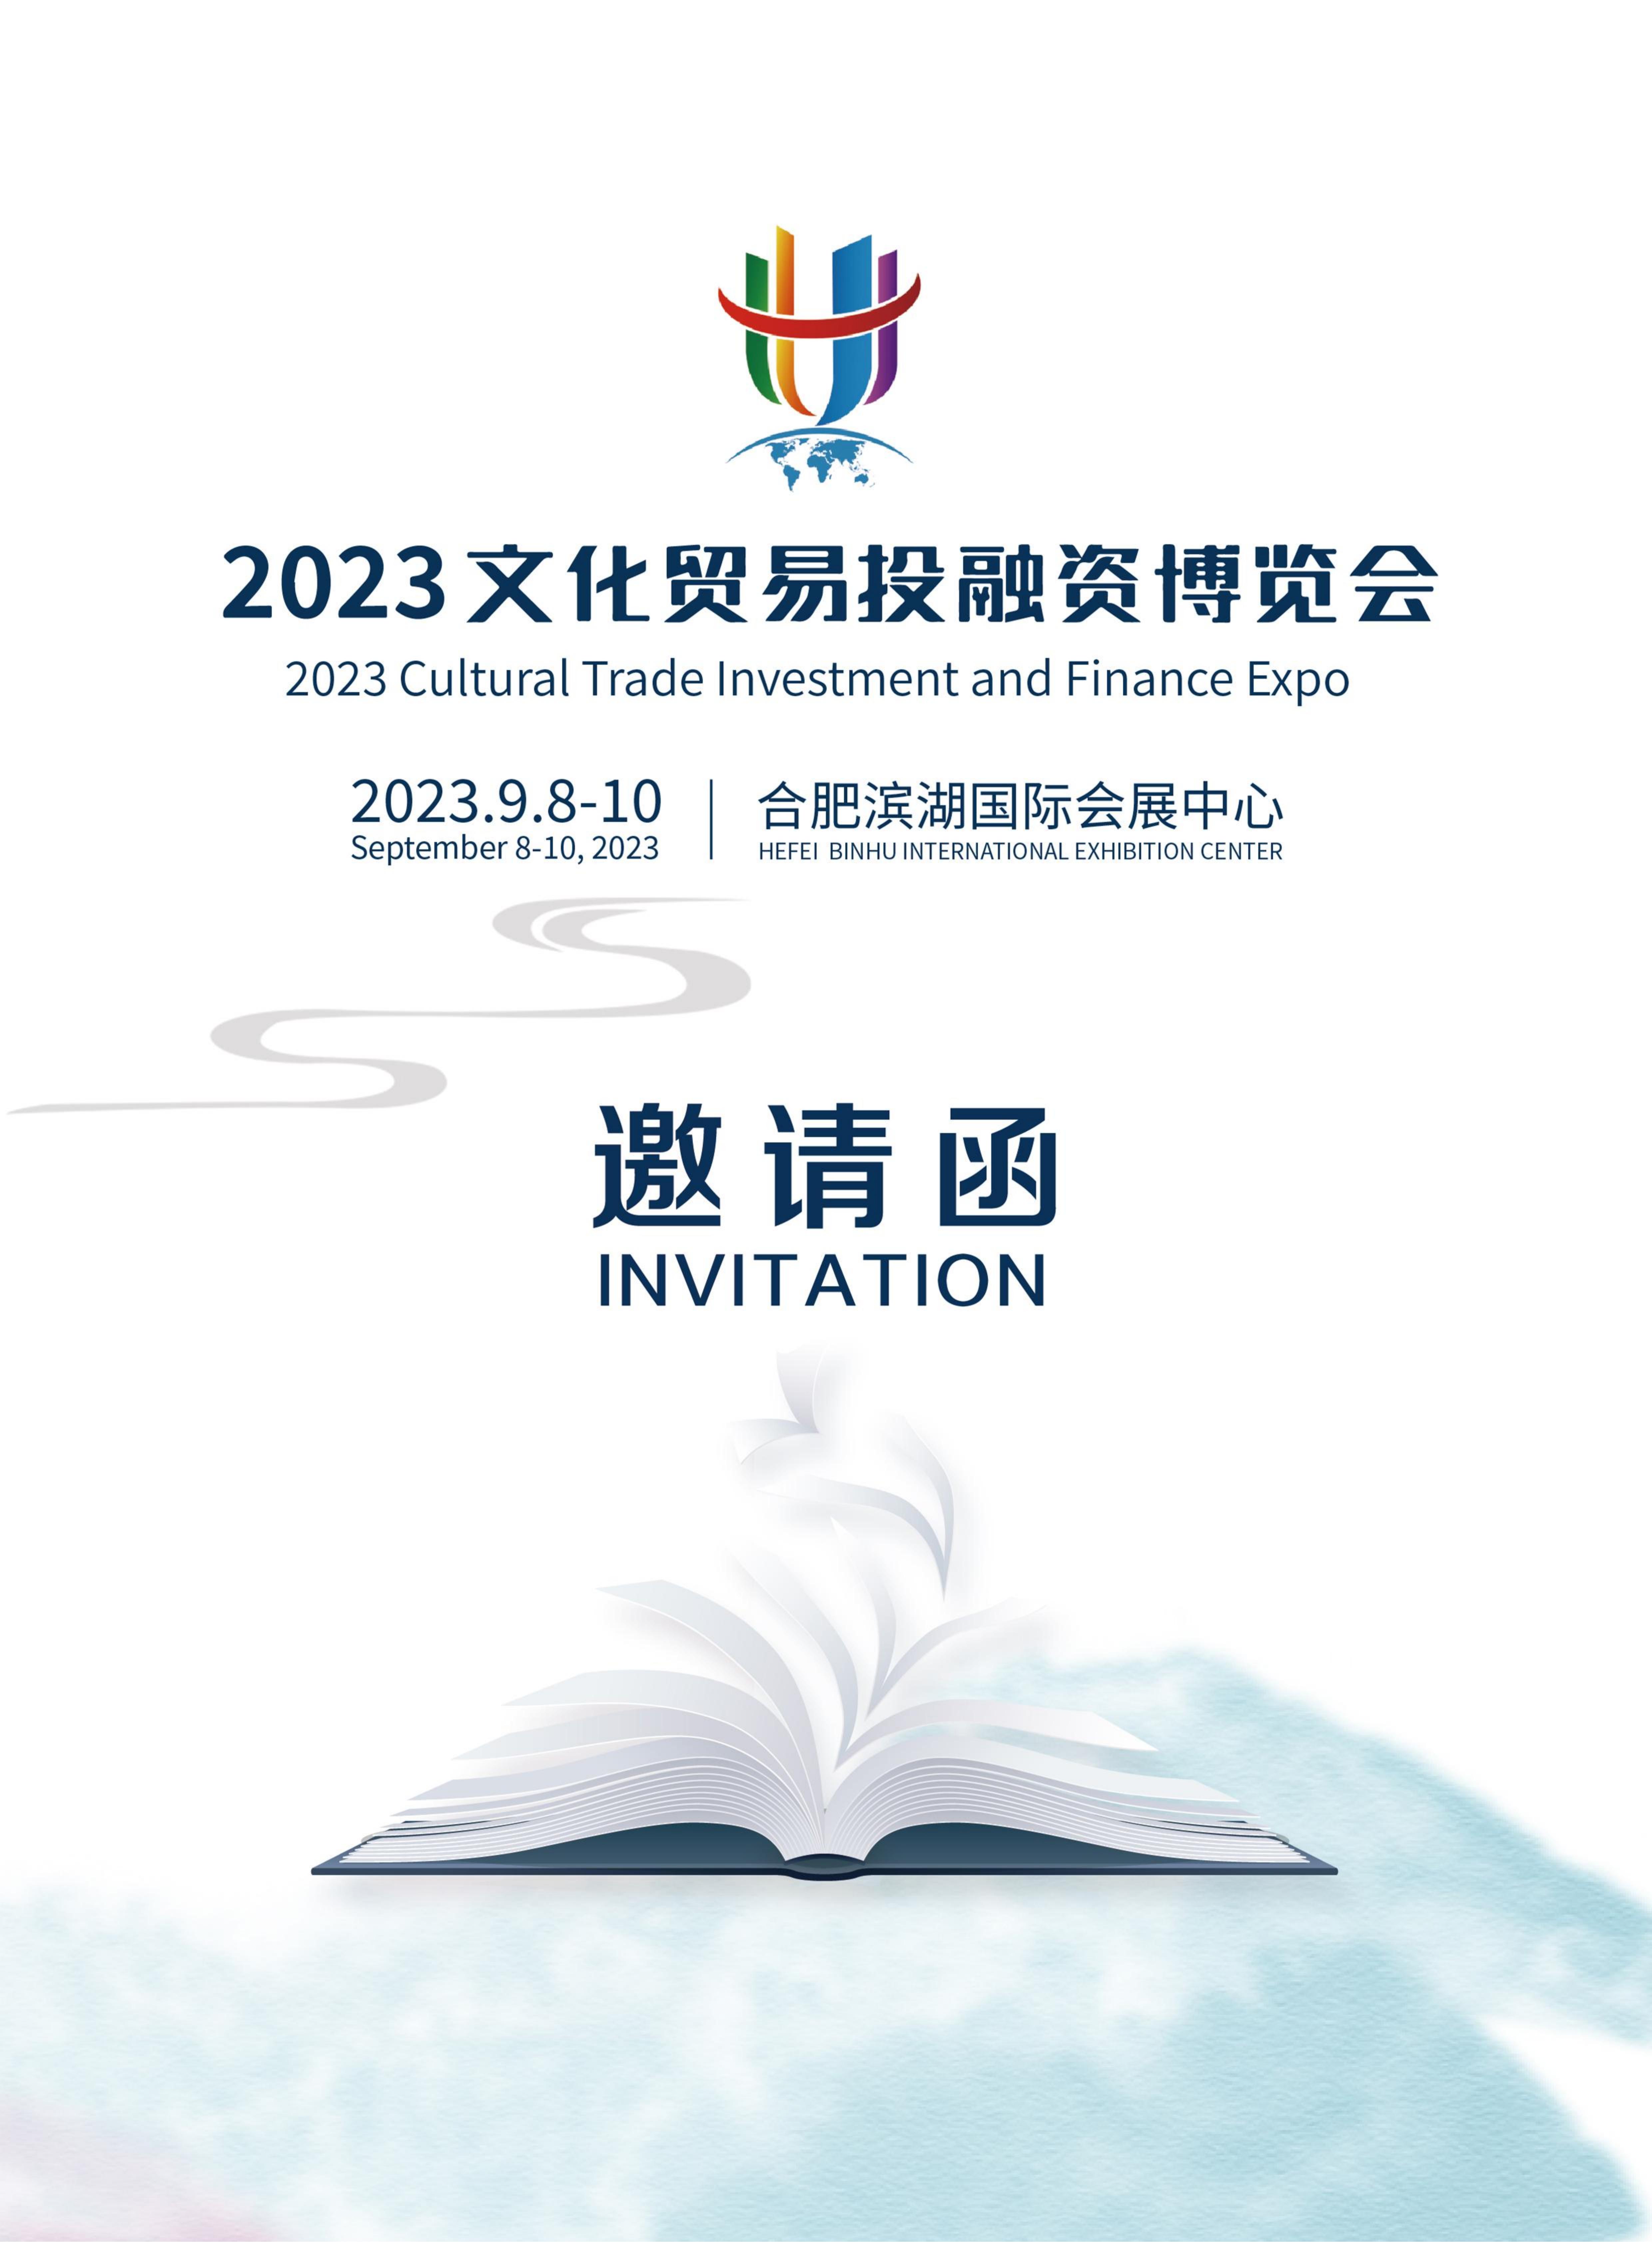 k8凯发国际攜手2023文化貿易投融資博覽會